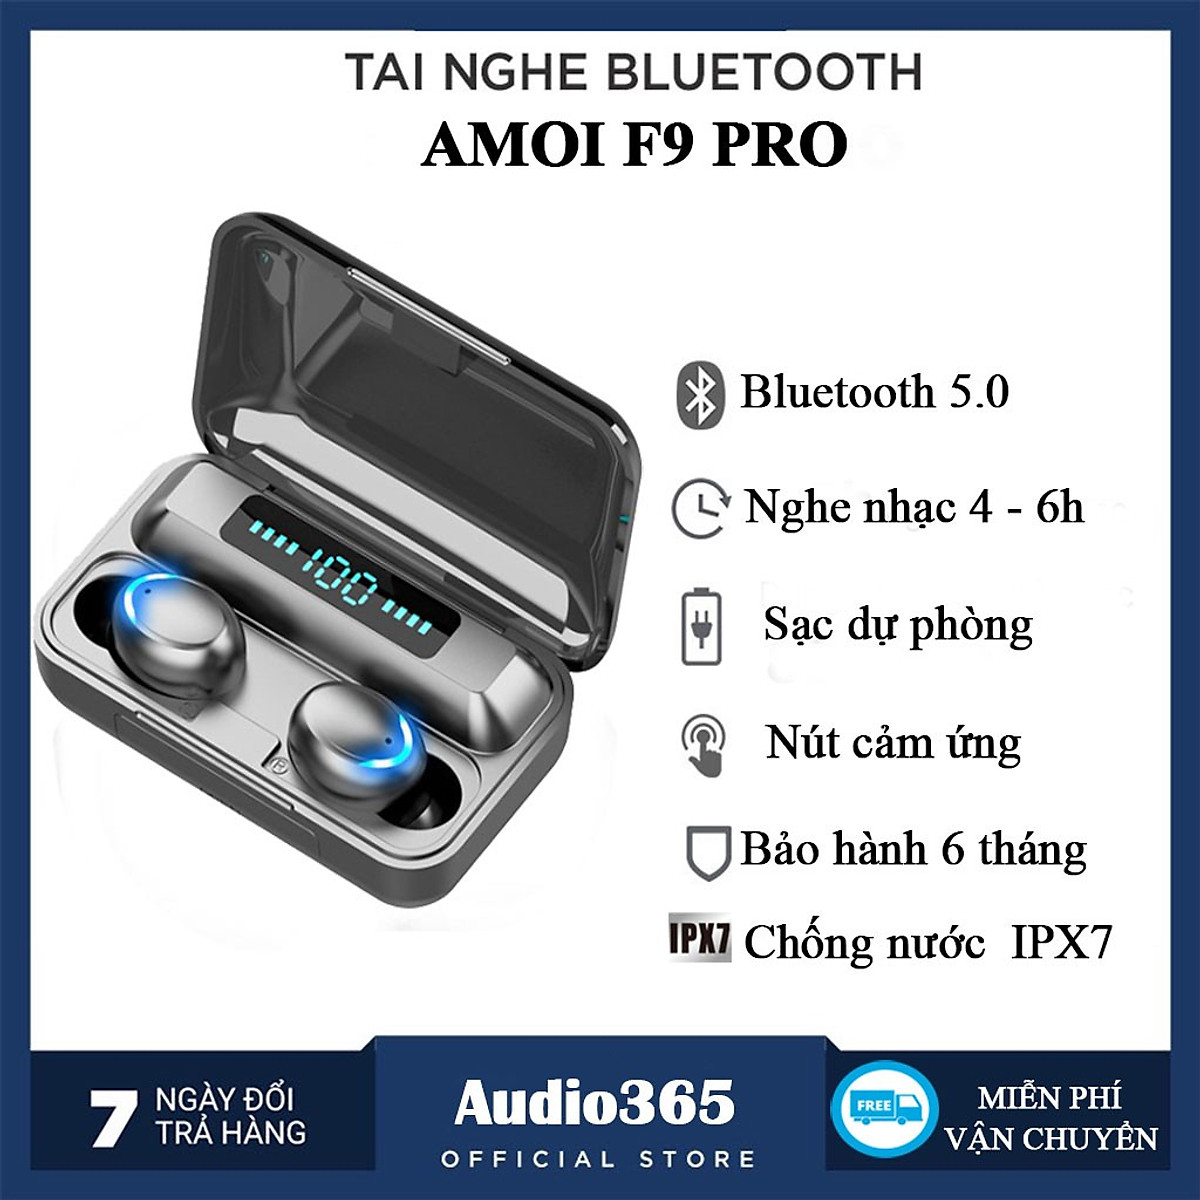 Tai Nghe Bluetooth F9 Pro Cảm Ứng Cao Cấp Tích Hợp Sạc Dự Phòng 2500mAh, Bass Cực Hay, Kháng Nước IPX7 - Hàng Chính Hãng